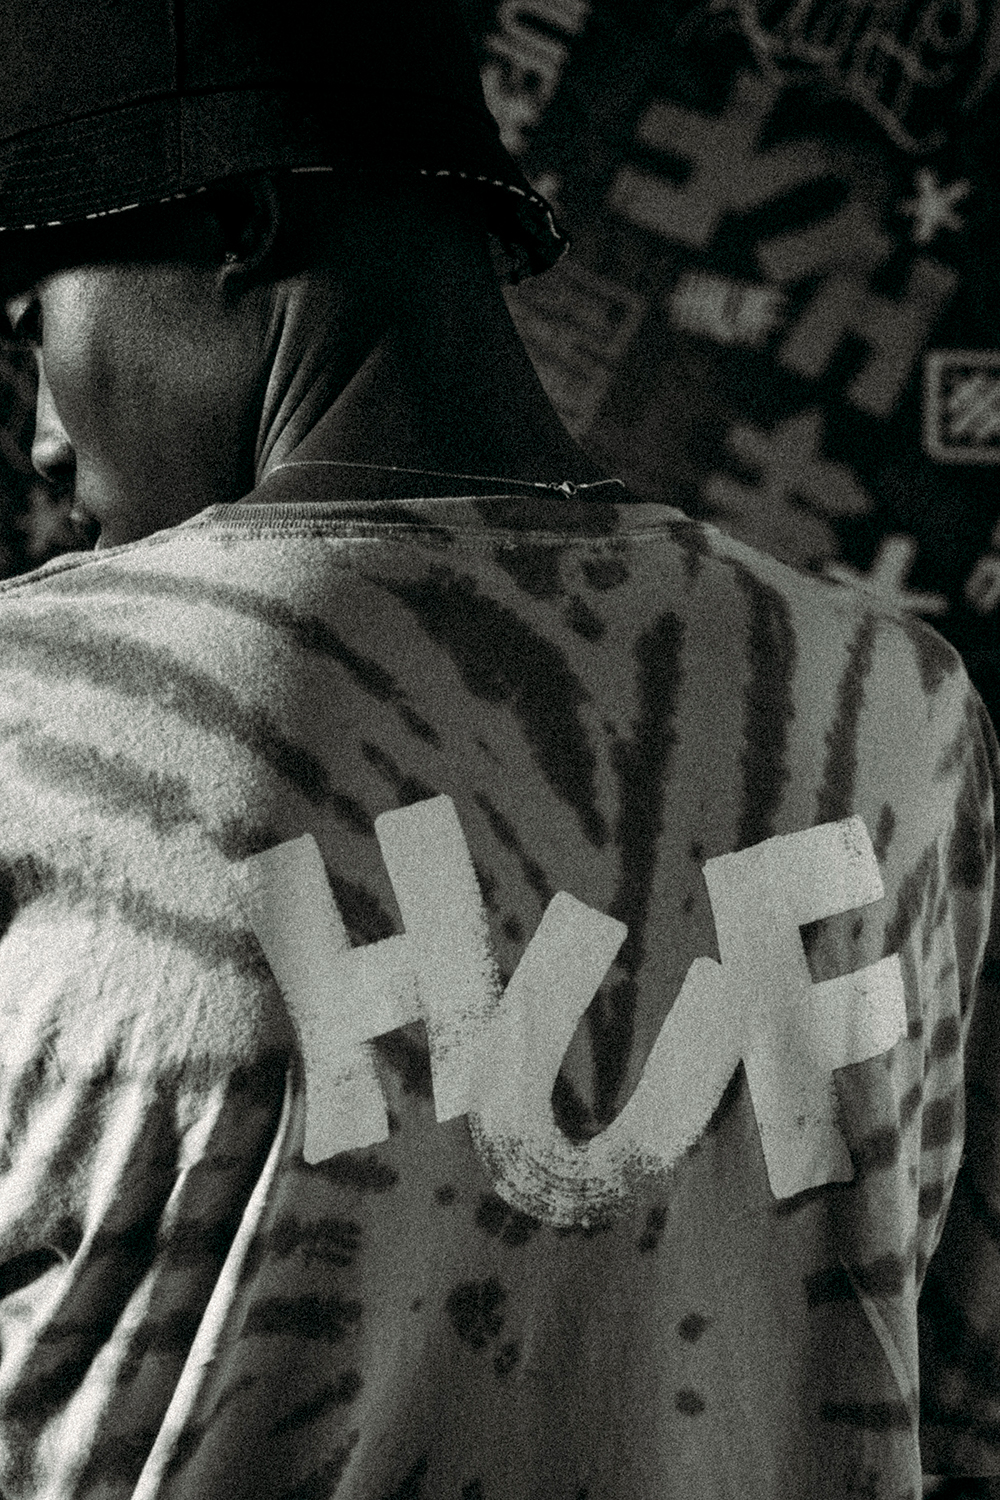 【世界100着限定 ジャケット】HUF × Eric Haze カプセルコレクションが2/26 発売 (ハフ エリック・ヘイズ)